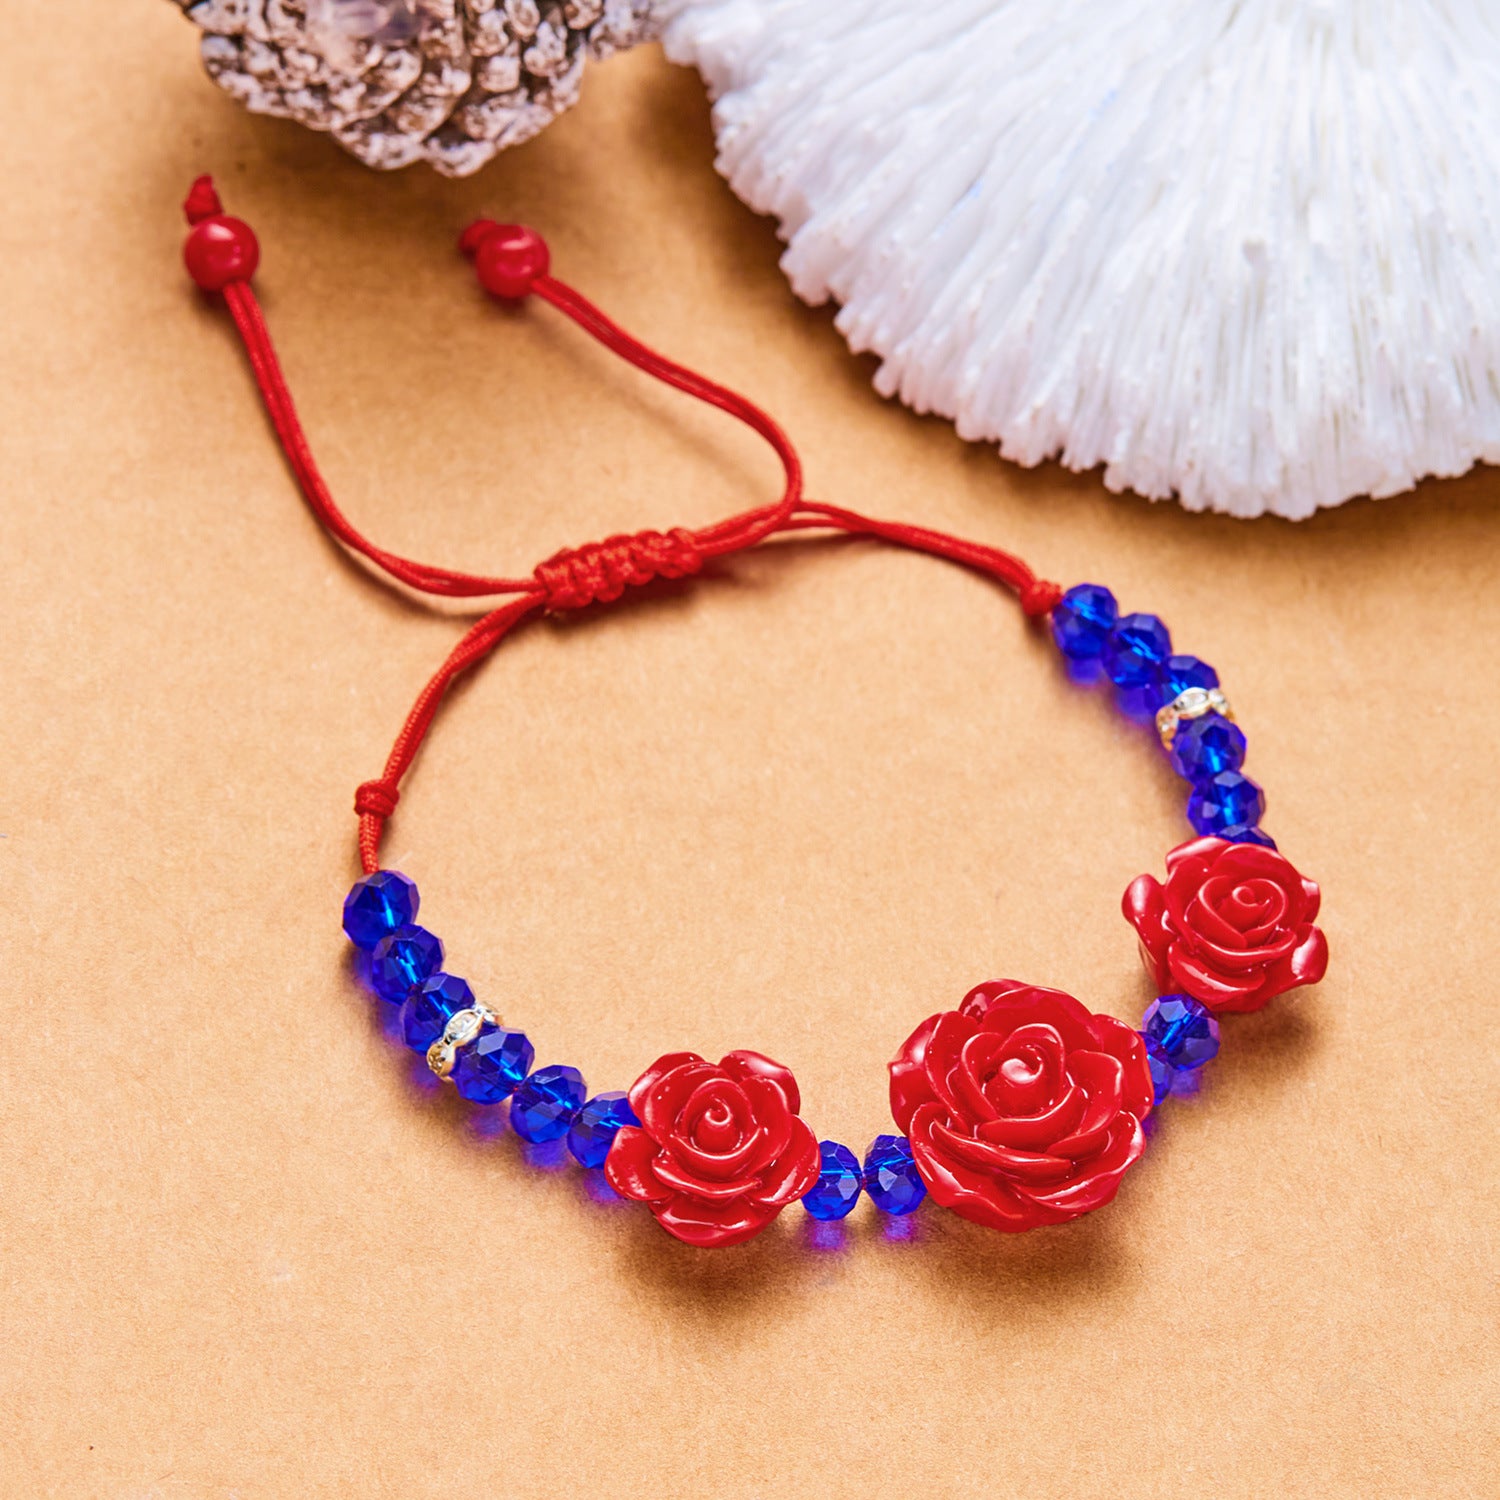 Flower Bracelet Creative Ethnic Rose Beads